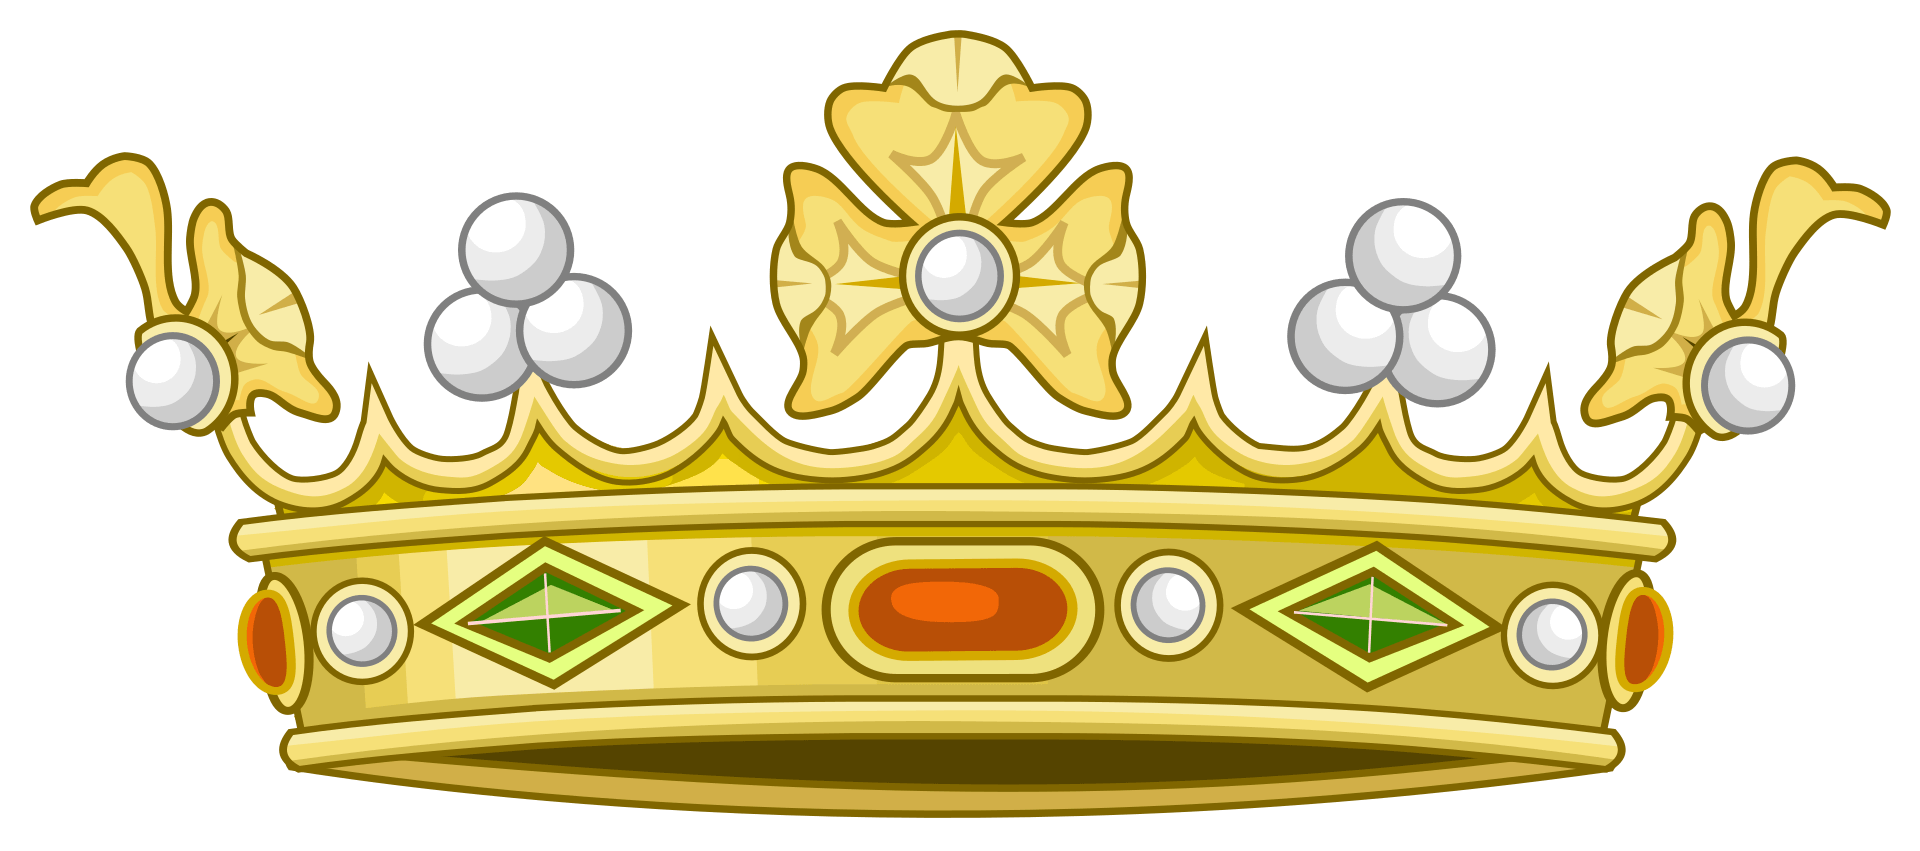 Corona de marqués.